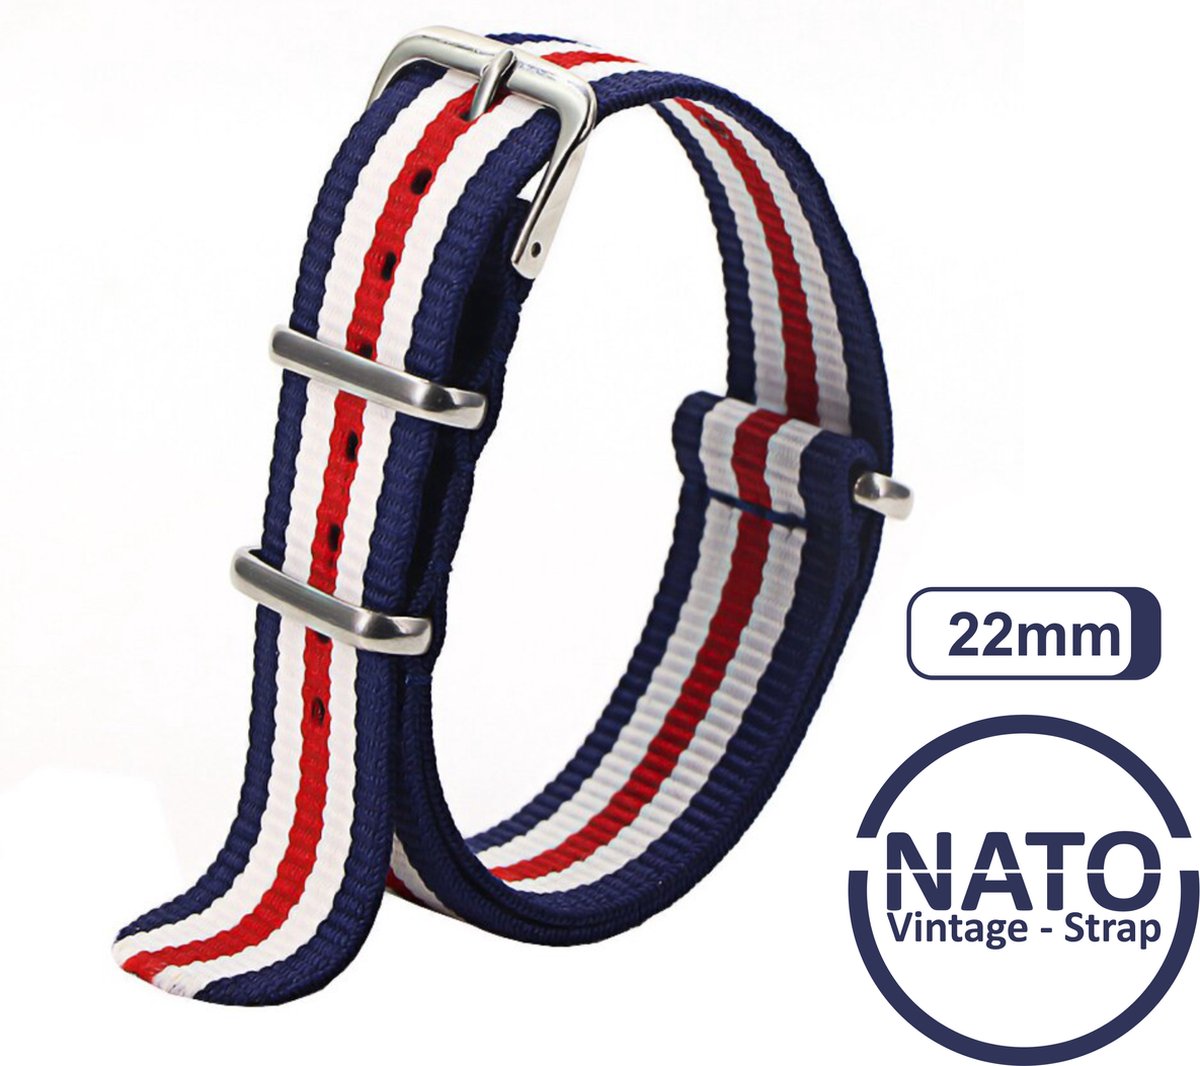 22mm Premium Nato Strap Blauw Rood Wit gestreept - Vintage James Bond - Nato Strap collectie - Mannen - Horlogeband - 22 mm bandbreedte voor oa. Seiko Rolex Omega Casio en Citizen